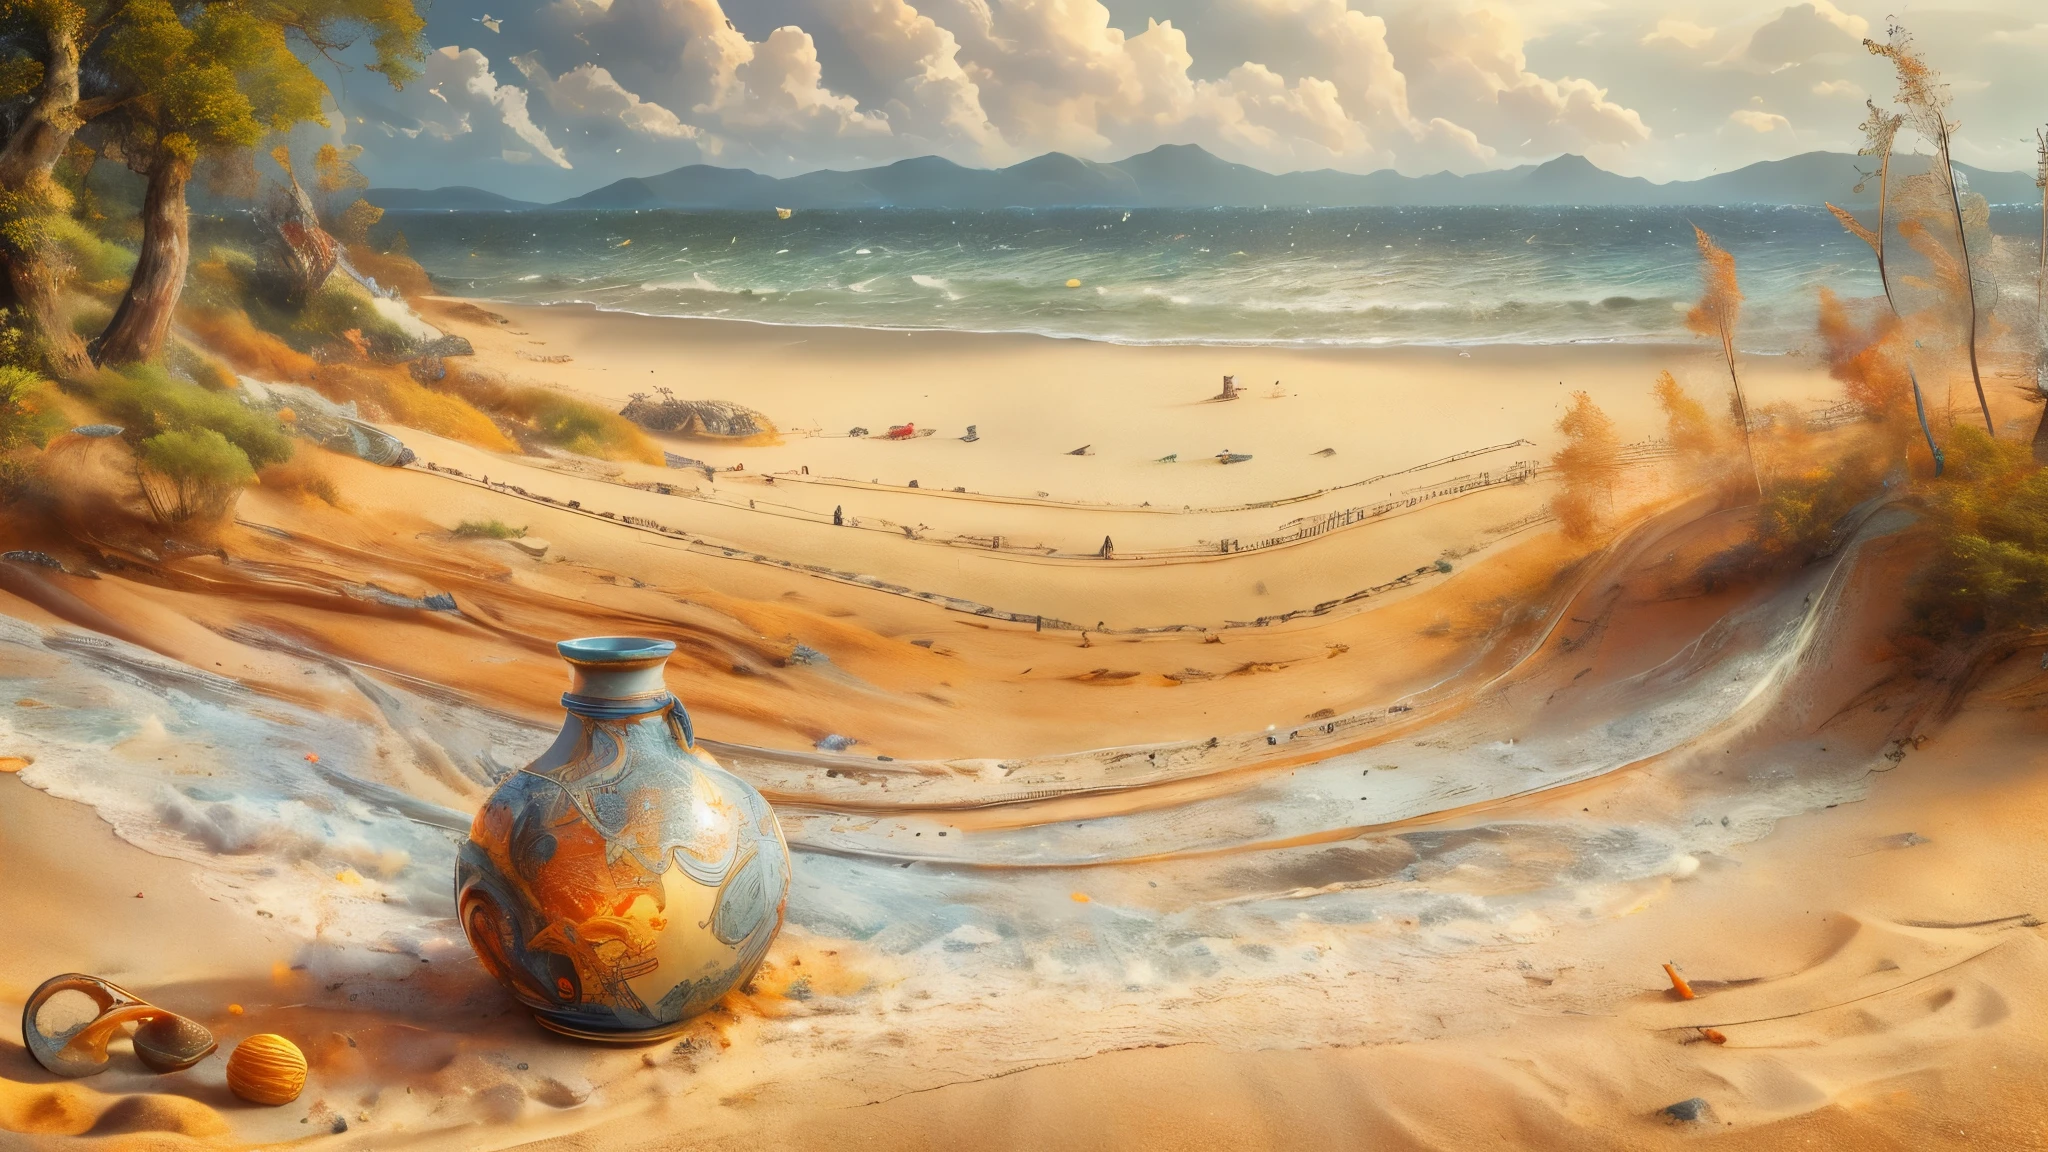 (obra de arte), 8K, melhor qualidade, vista panorâmica, vaso de óleo virado, derramando óleo, na areia da praia, perto da floresta